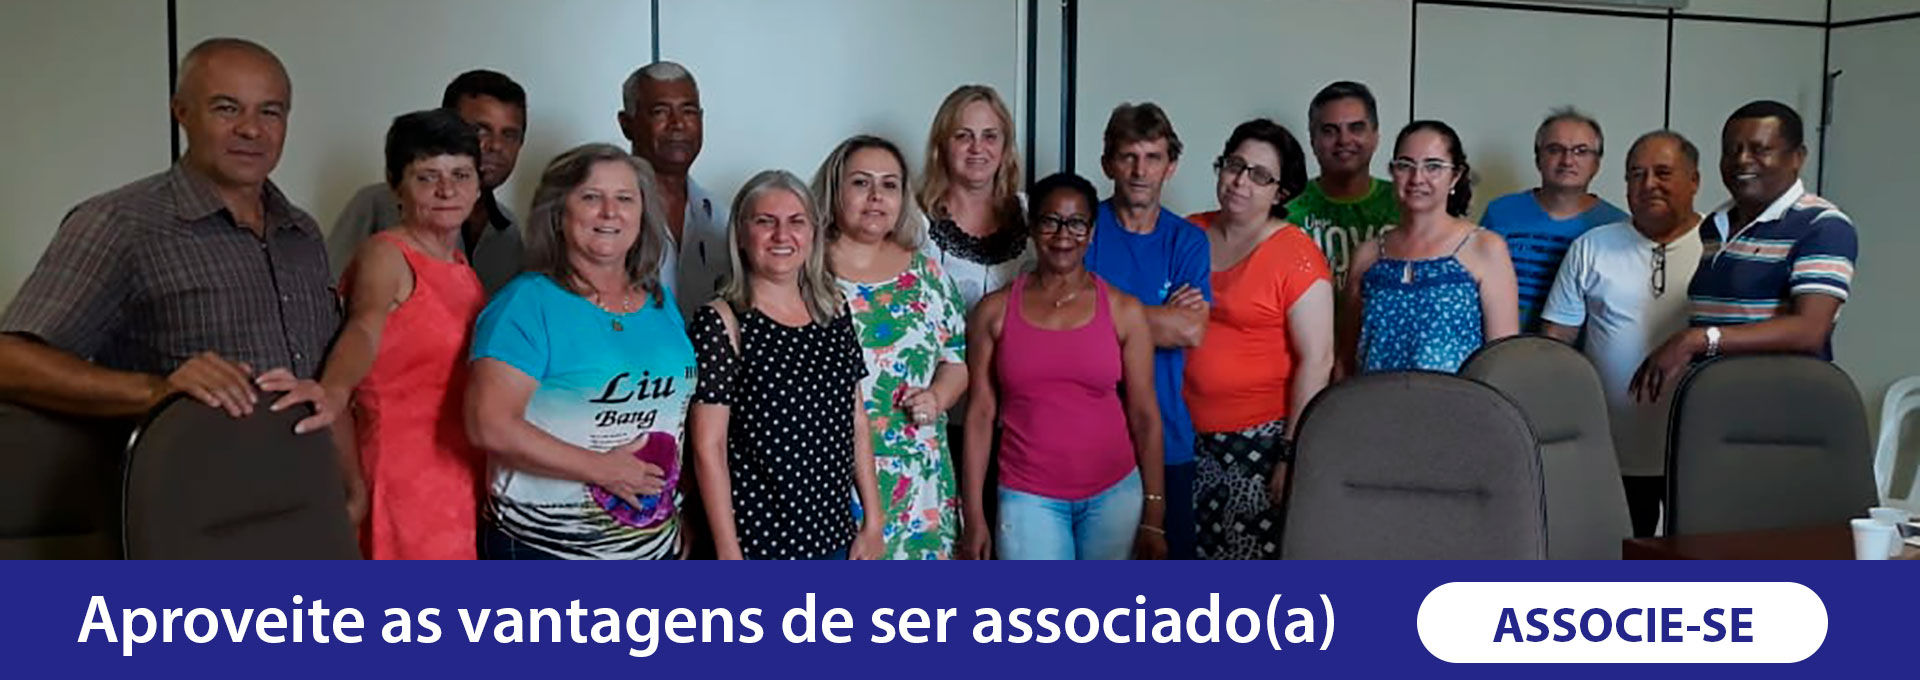 ASSEMU | Associação dos Servidores Municipais de Umuarama